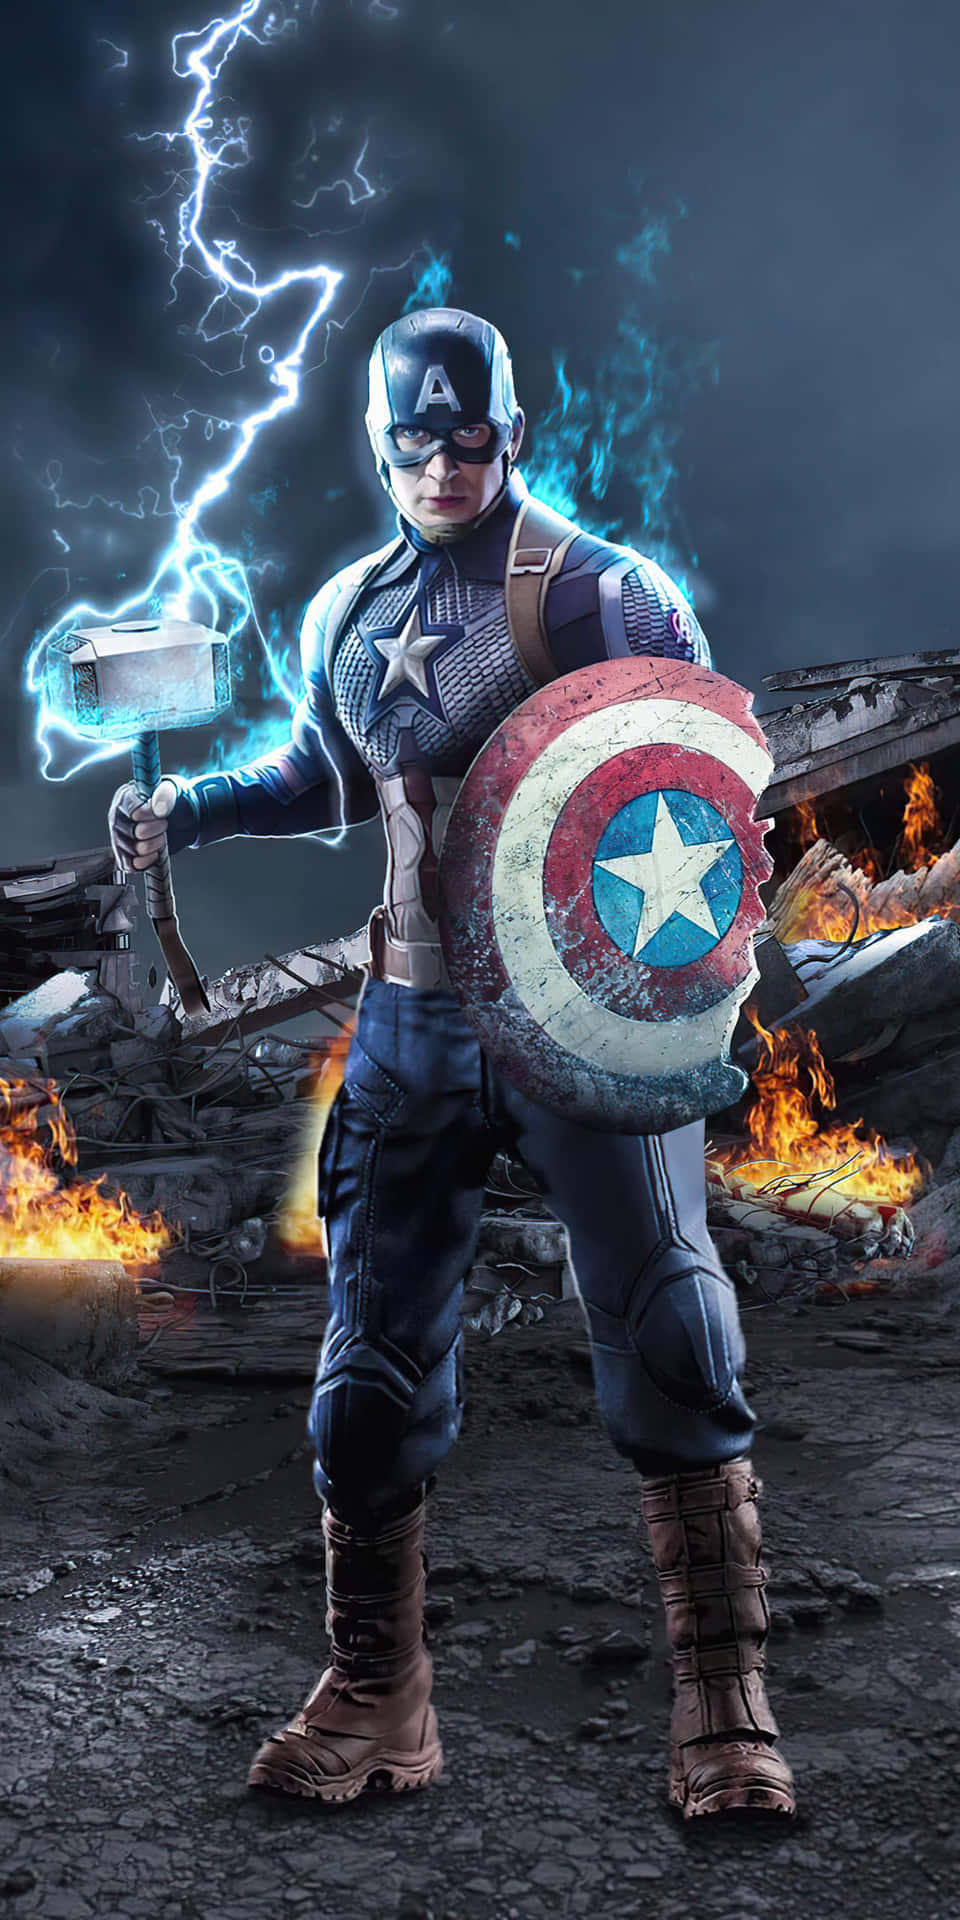 Fondode Pantalla De Pixel 3 Con Capitán América En Avengers Endgame.